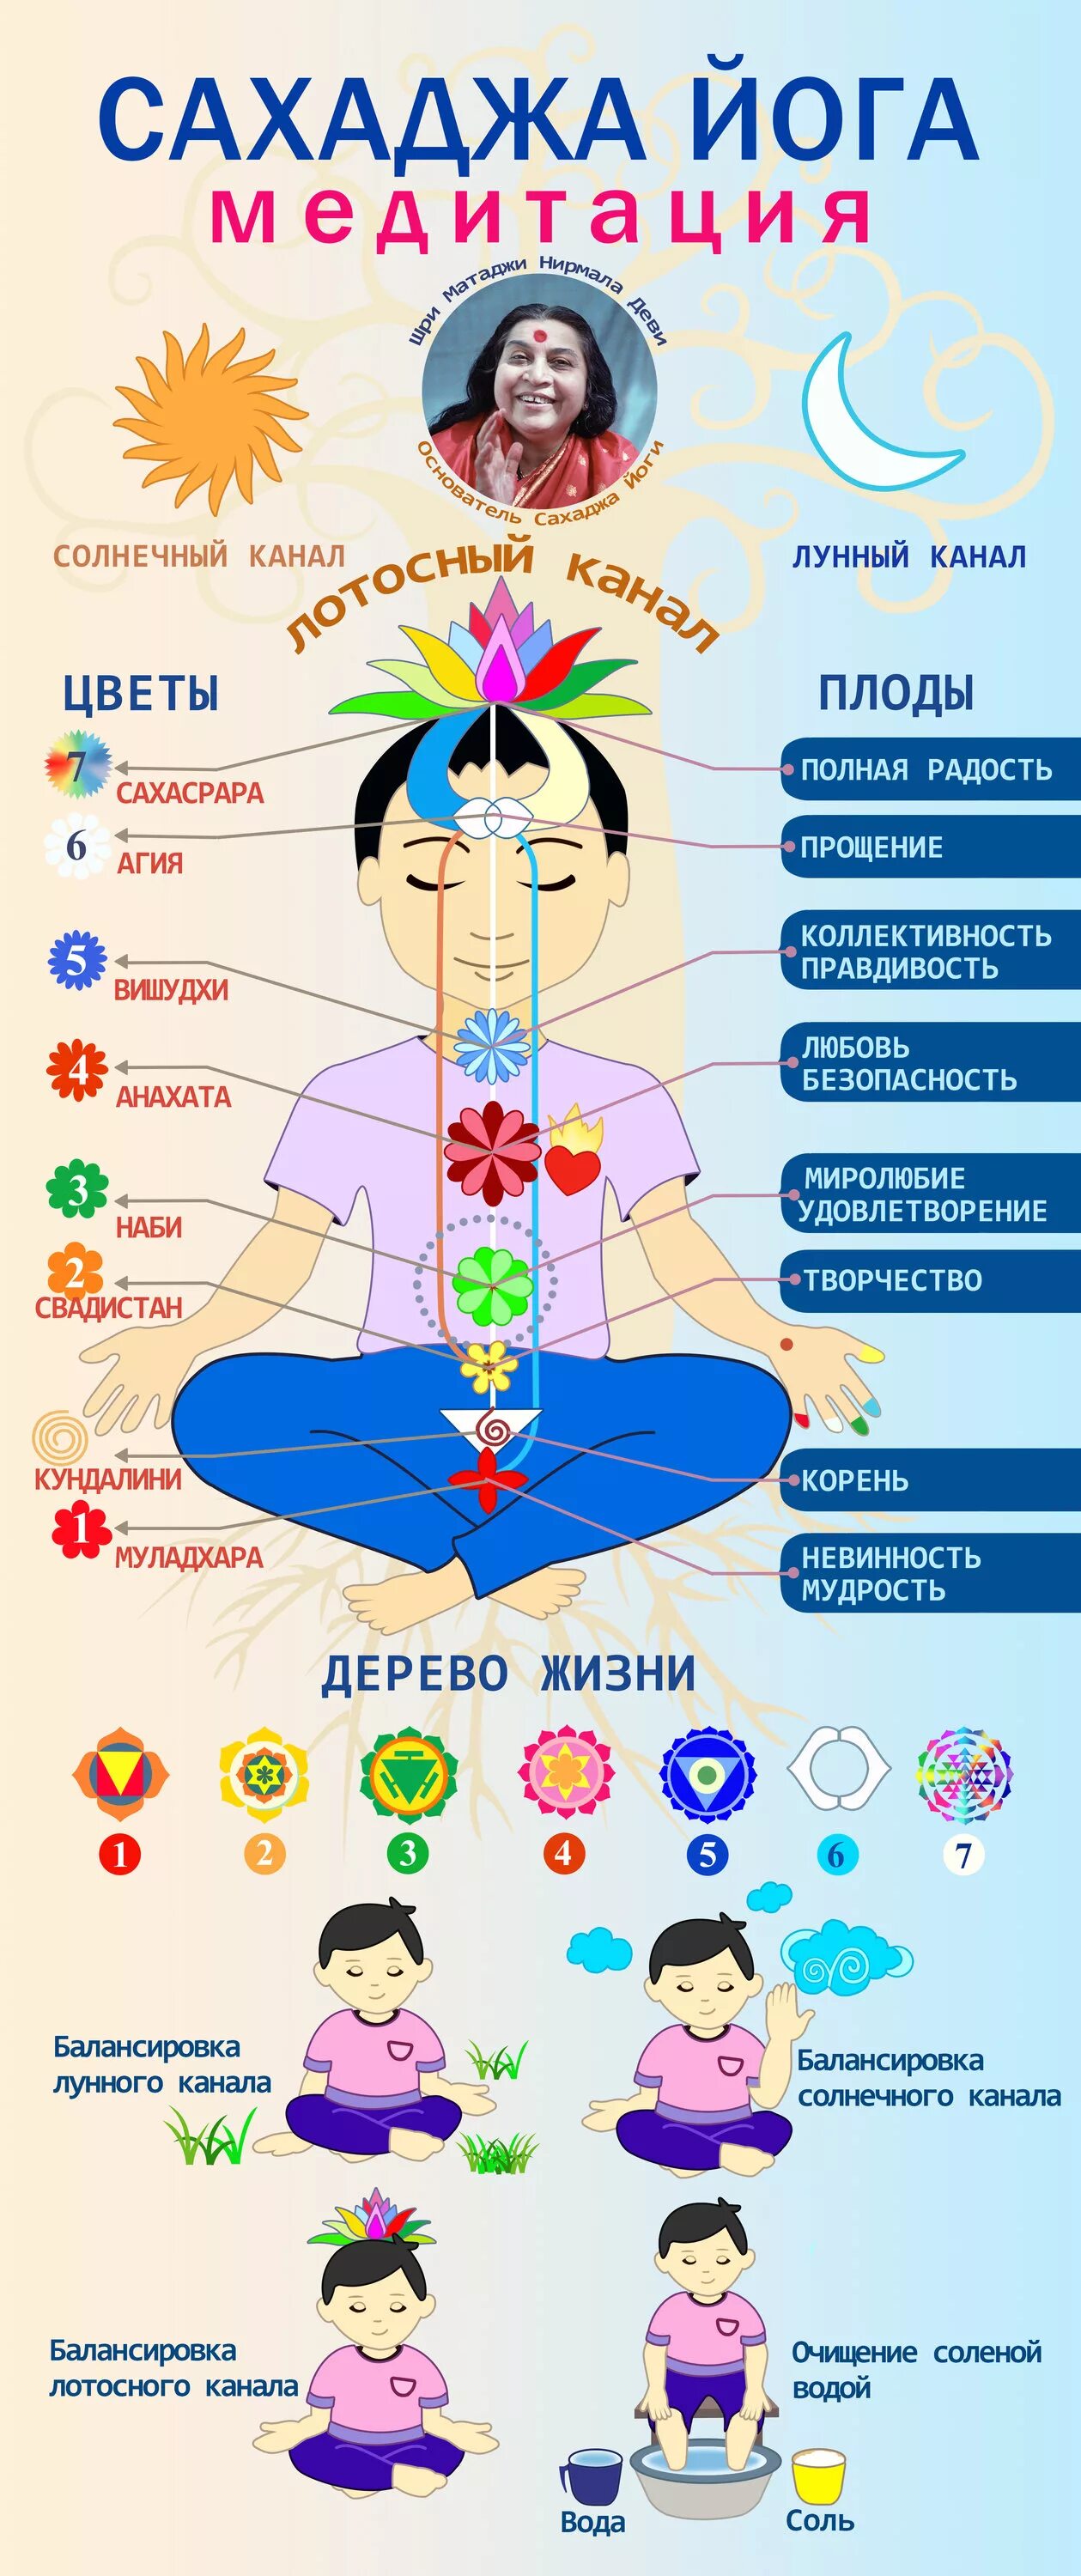 Схема чакр Сахаджа йога. Сахаджа йога картинки. Сахаджа йога энергетические центры. Кундалини Сахаджа йога. Сахаджа медитация